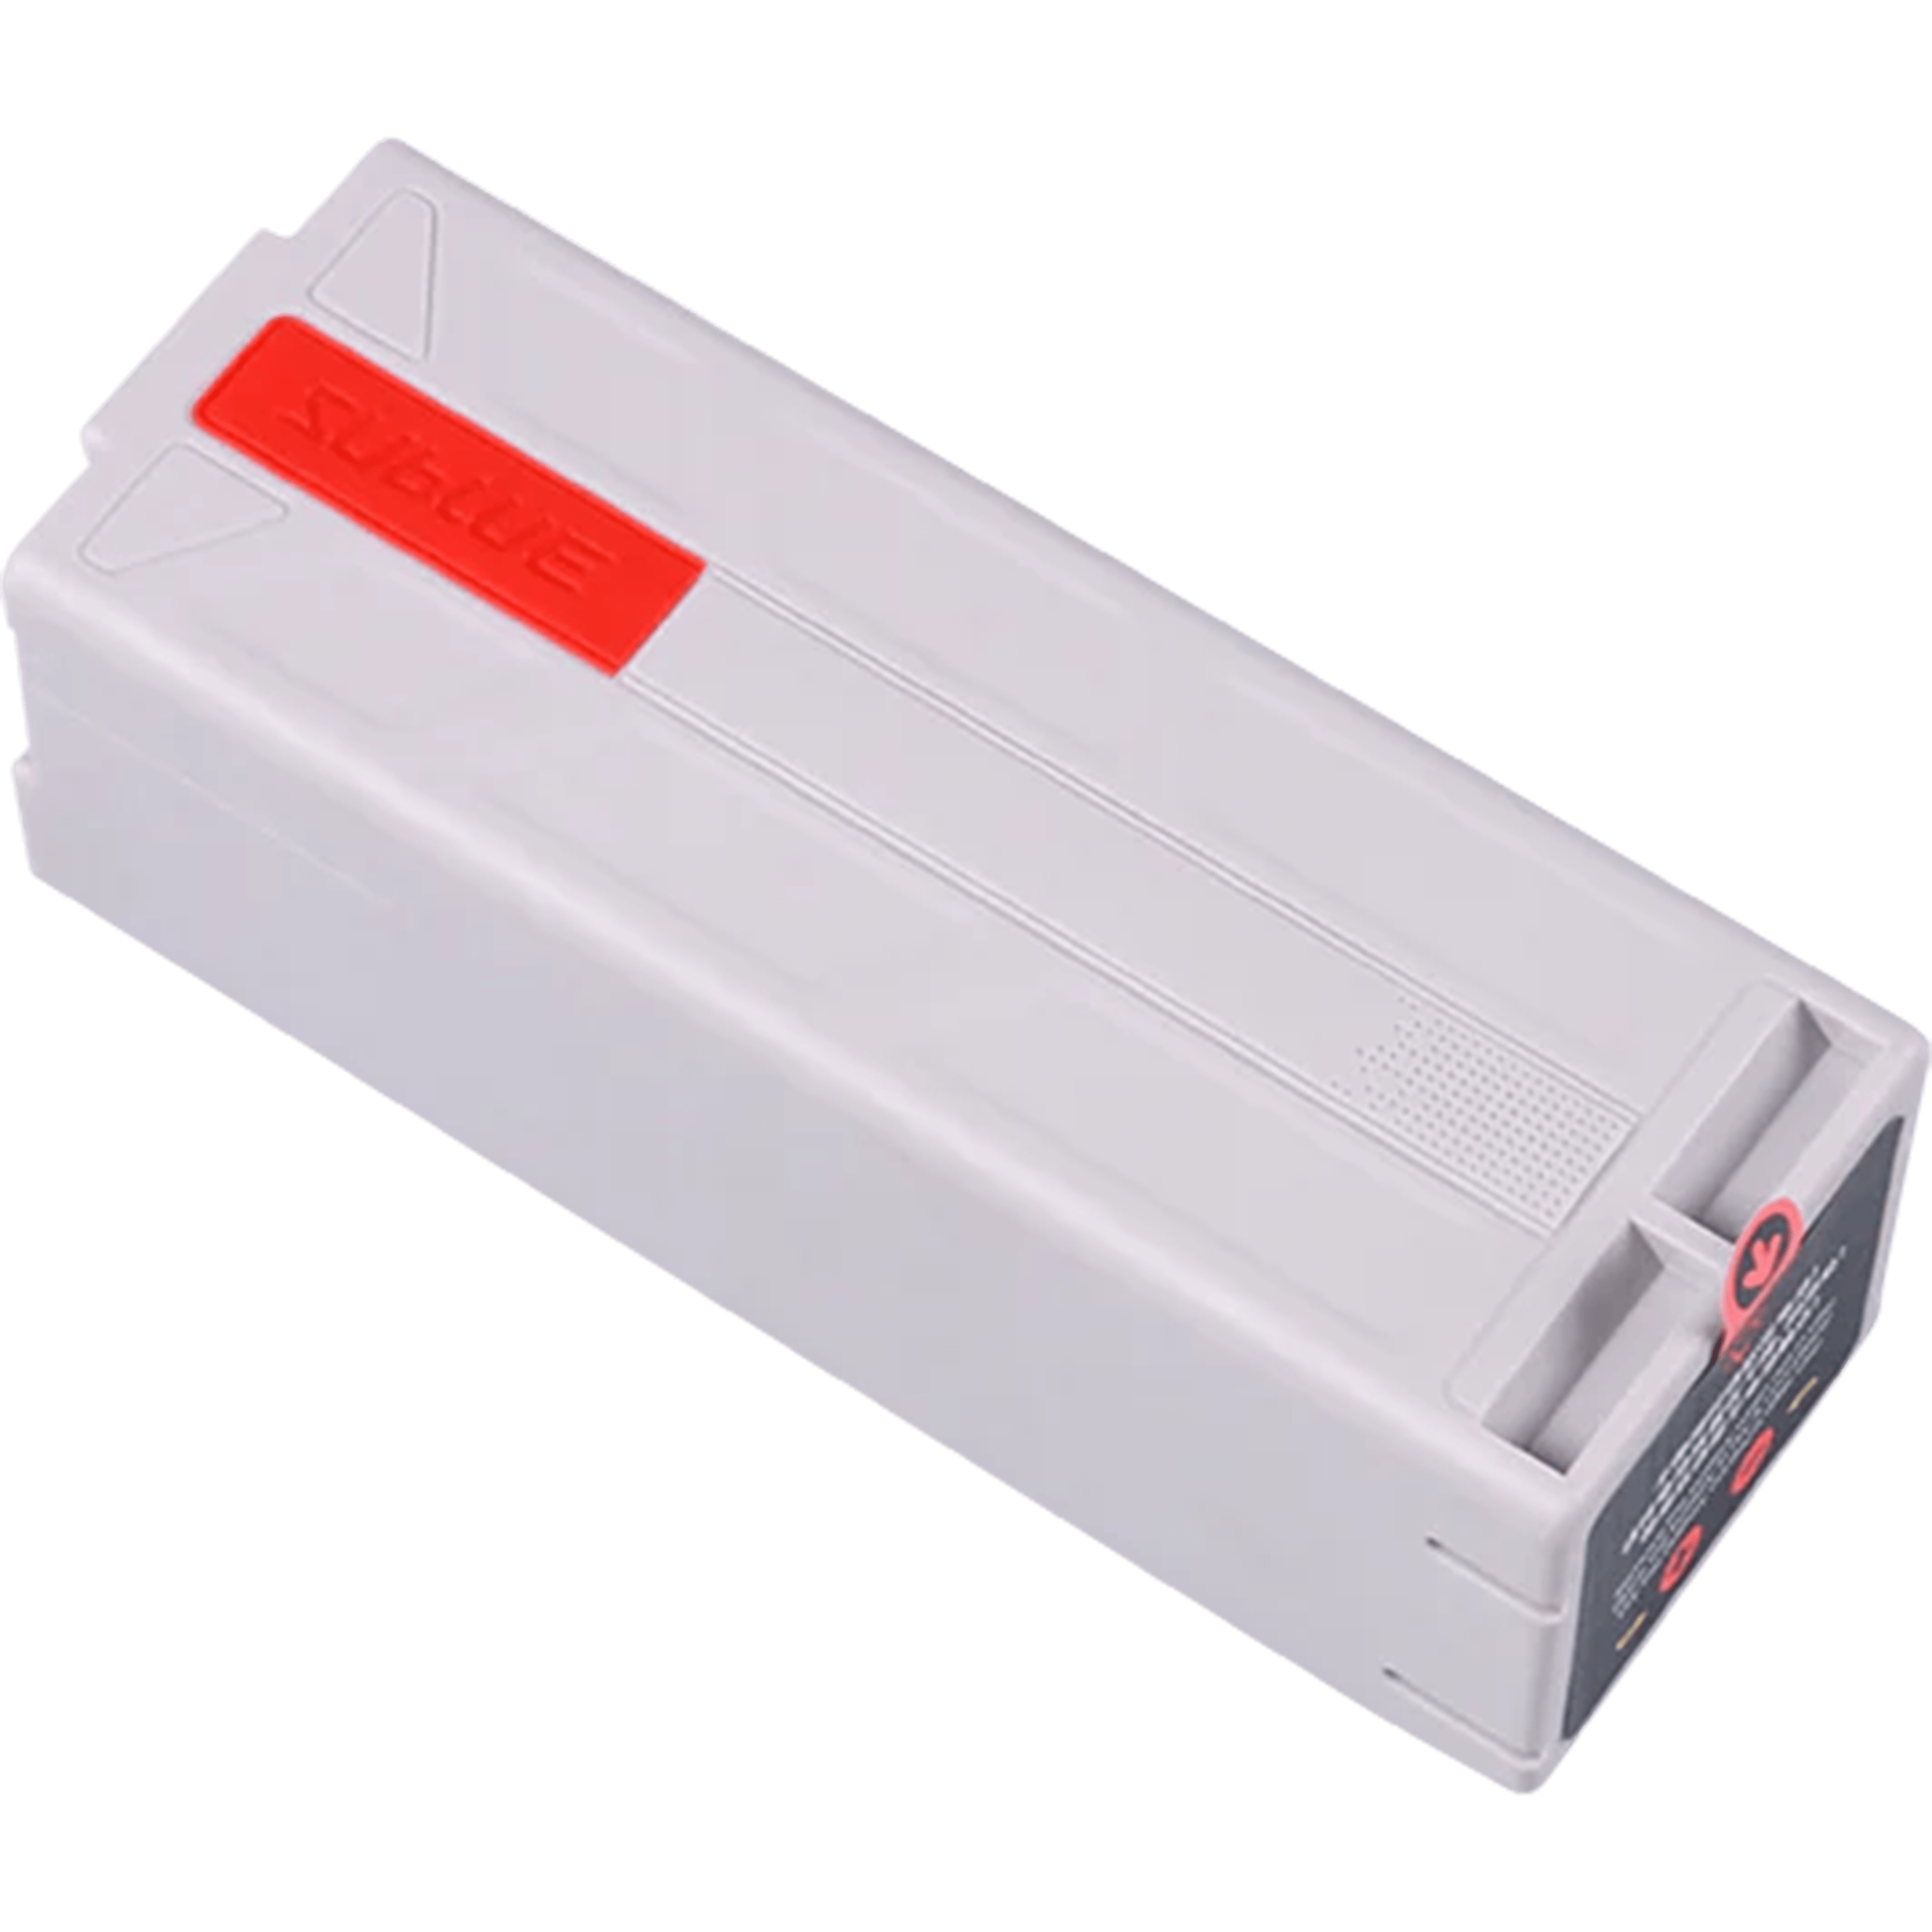 סוללה לסקוטר- Lithium ION Battery Pack For Home Appliance 158Wh אפור